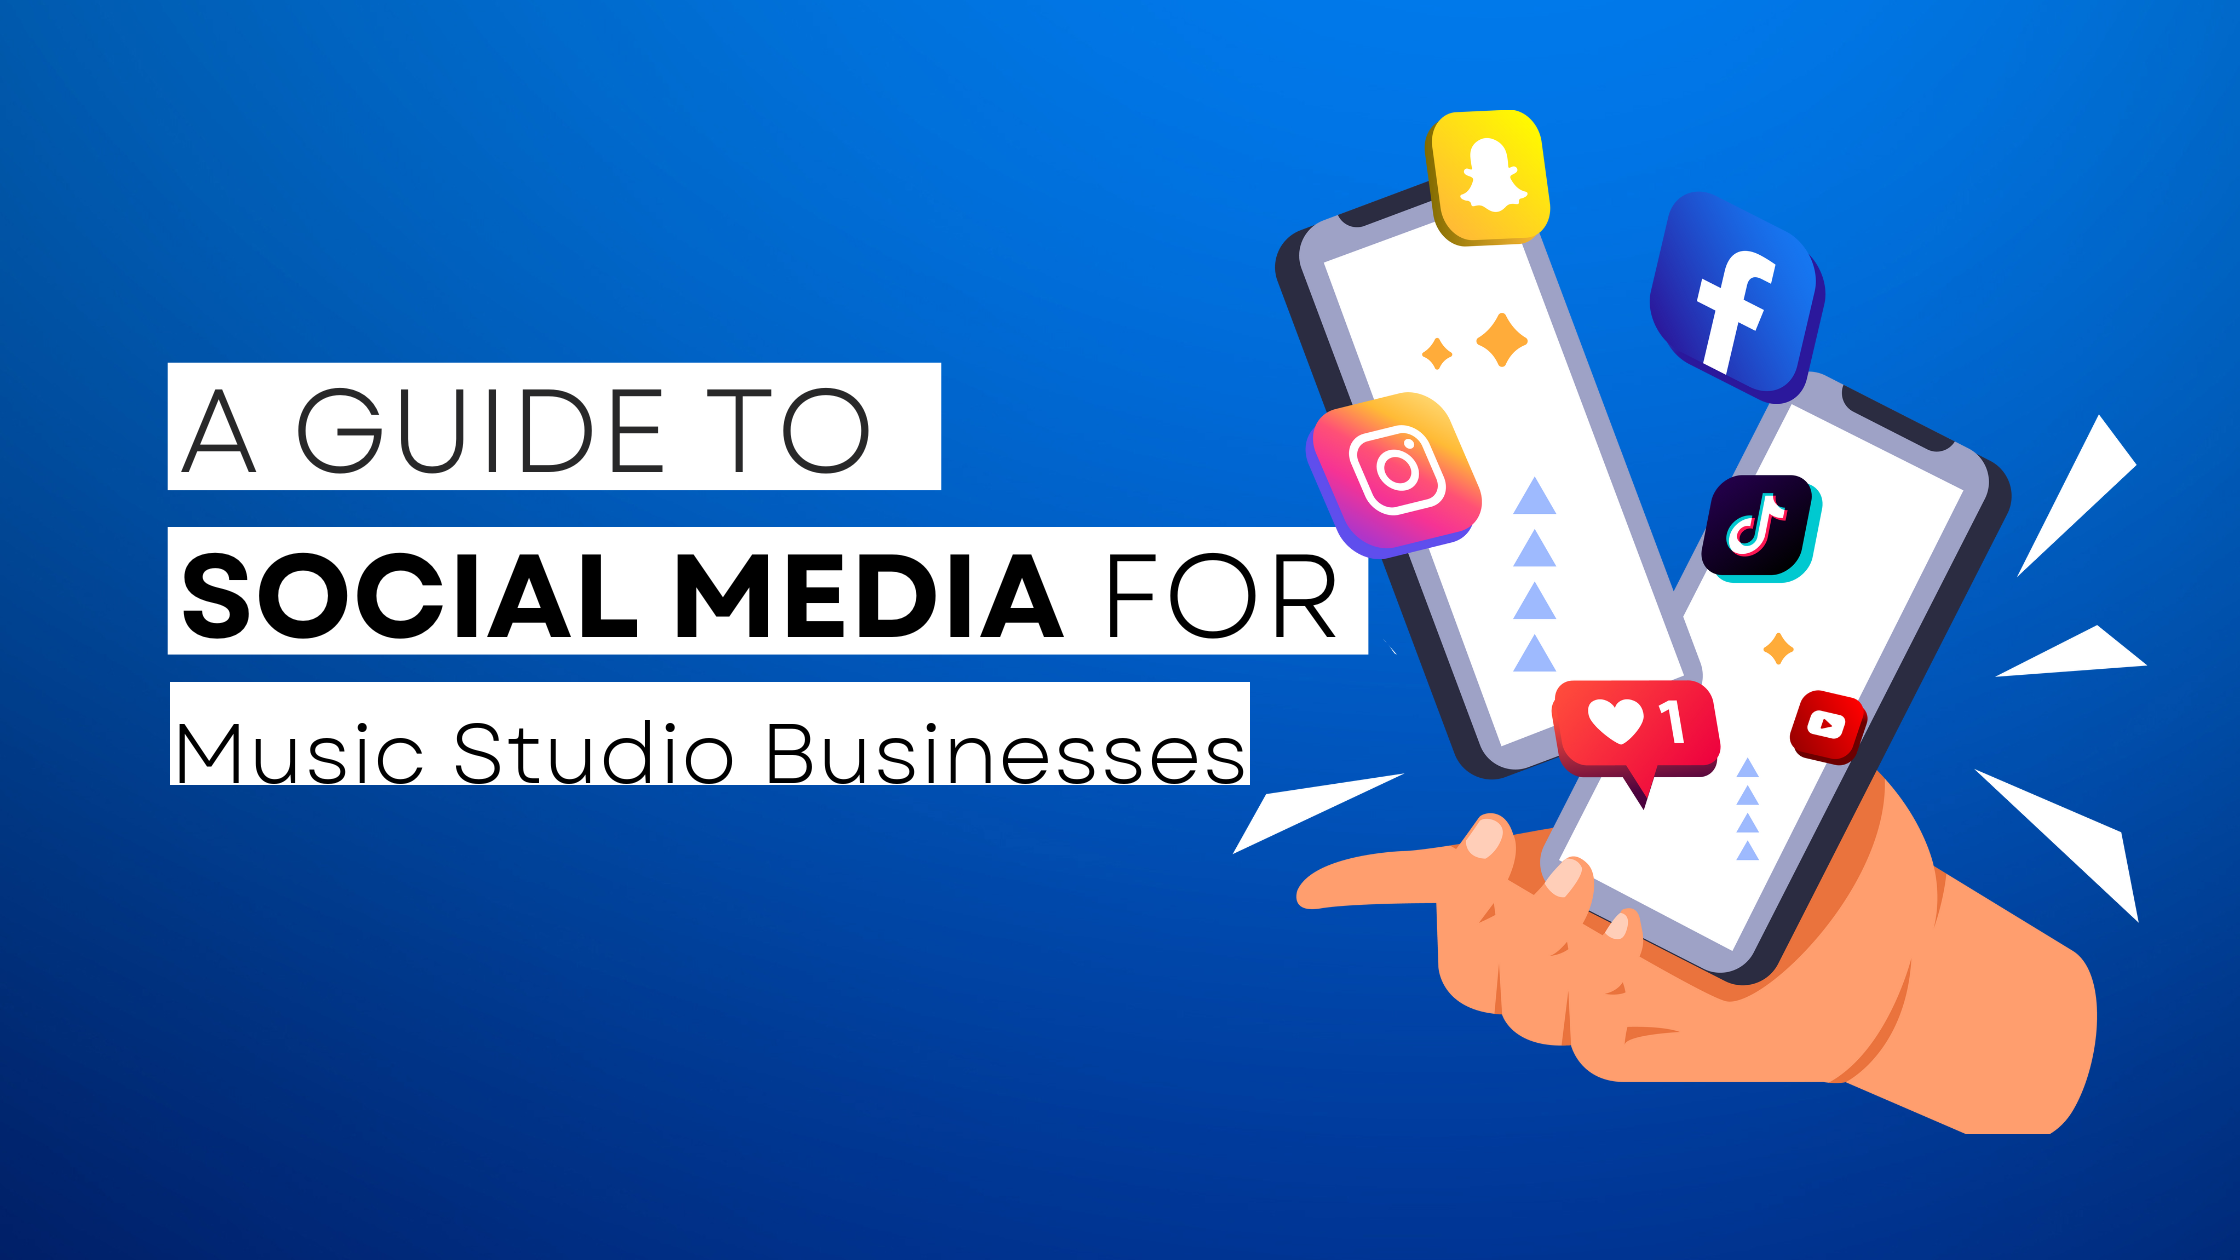 How to start Music Studio on social media